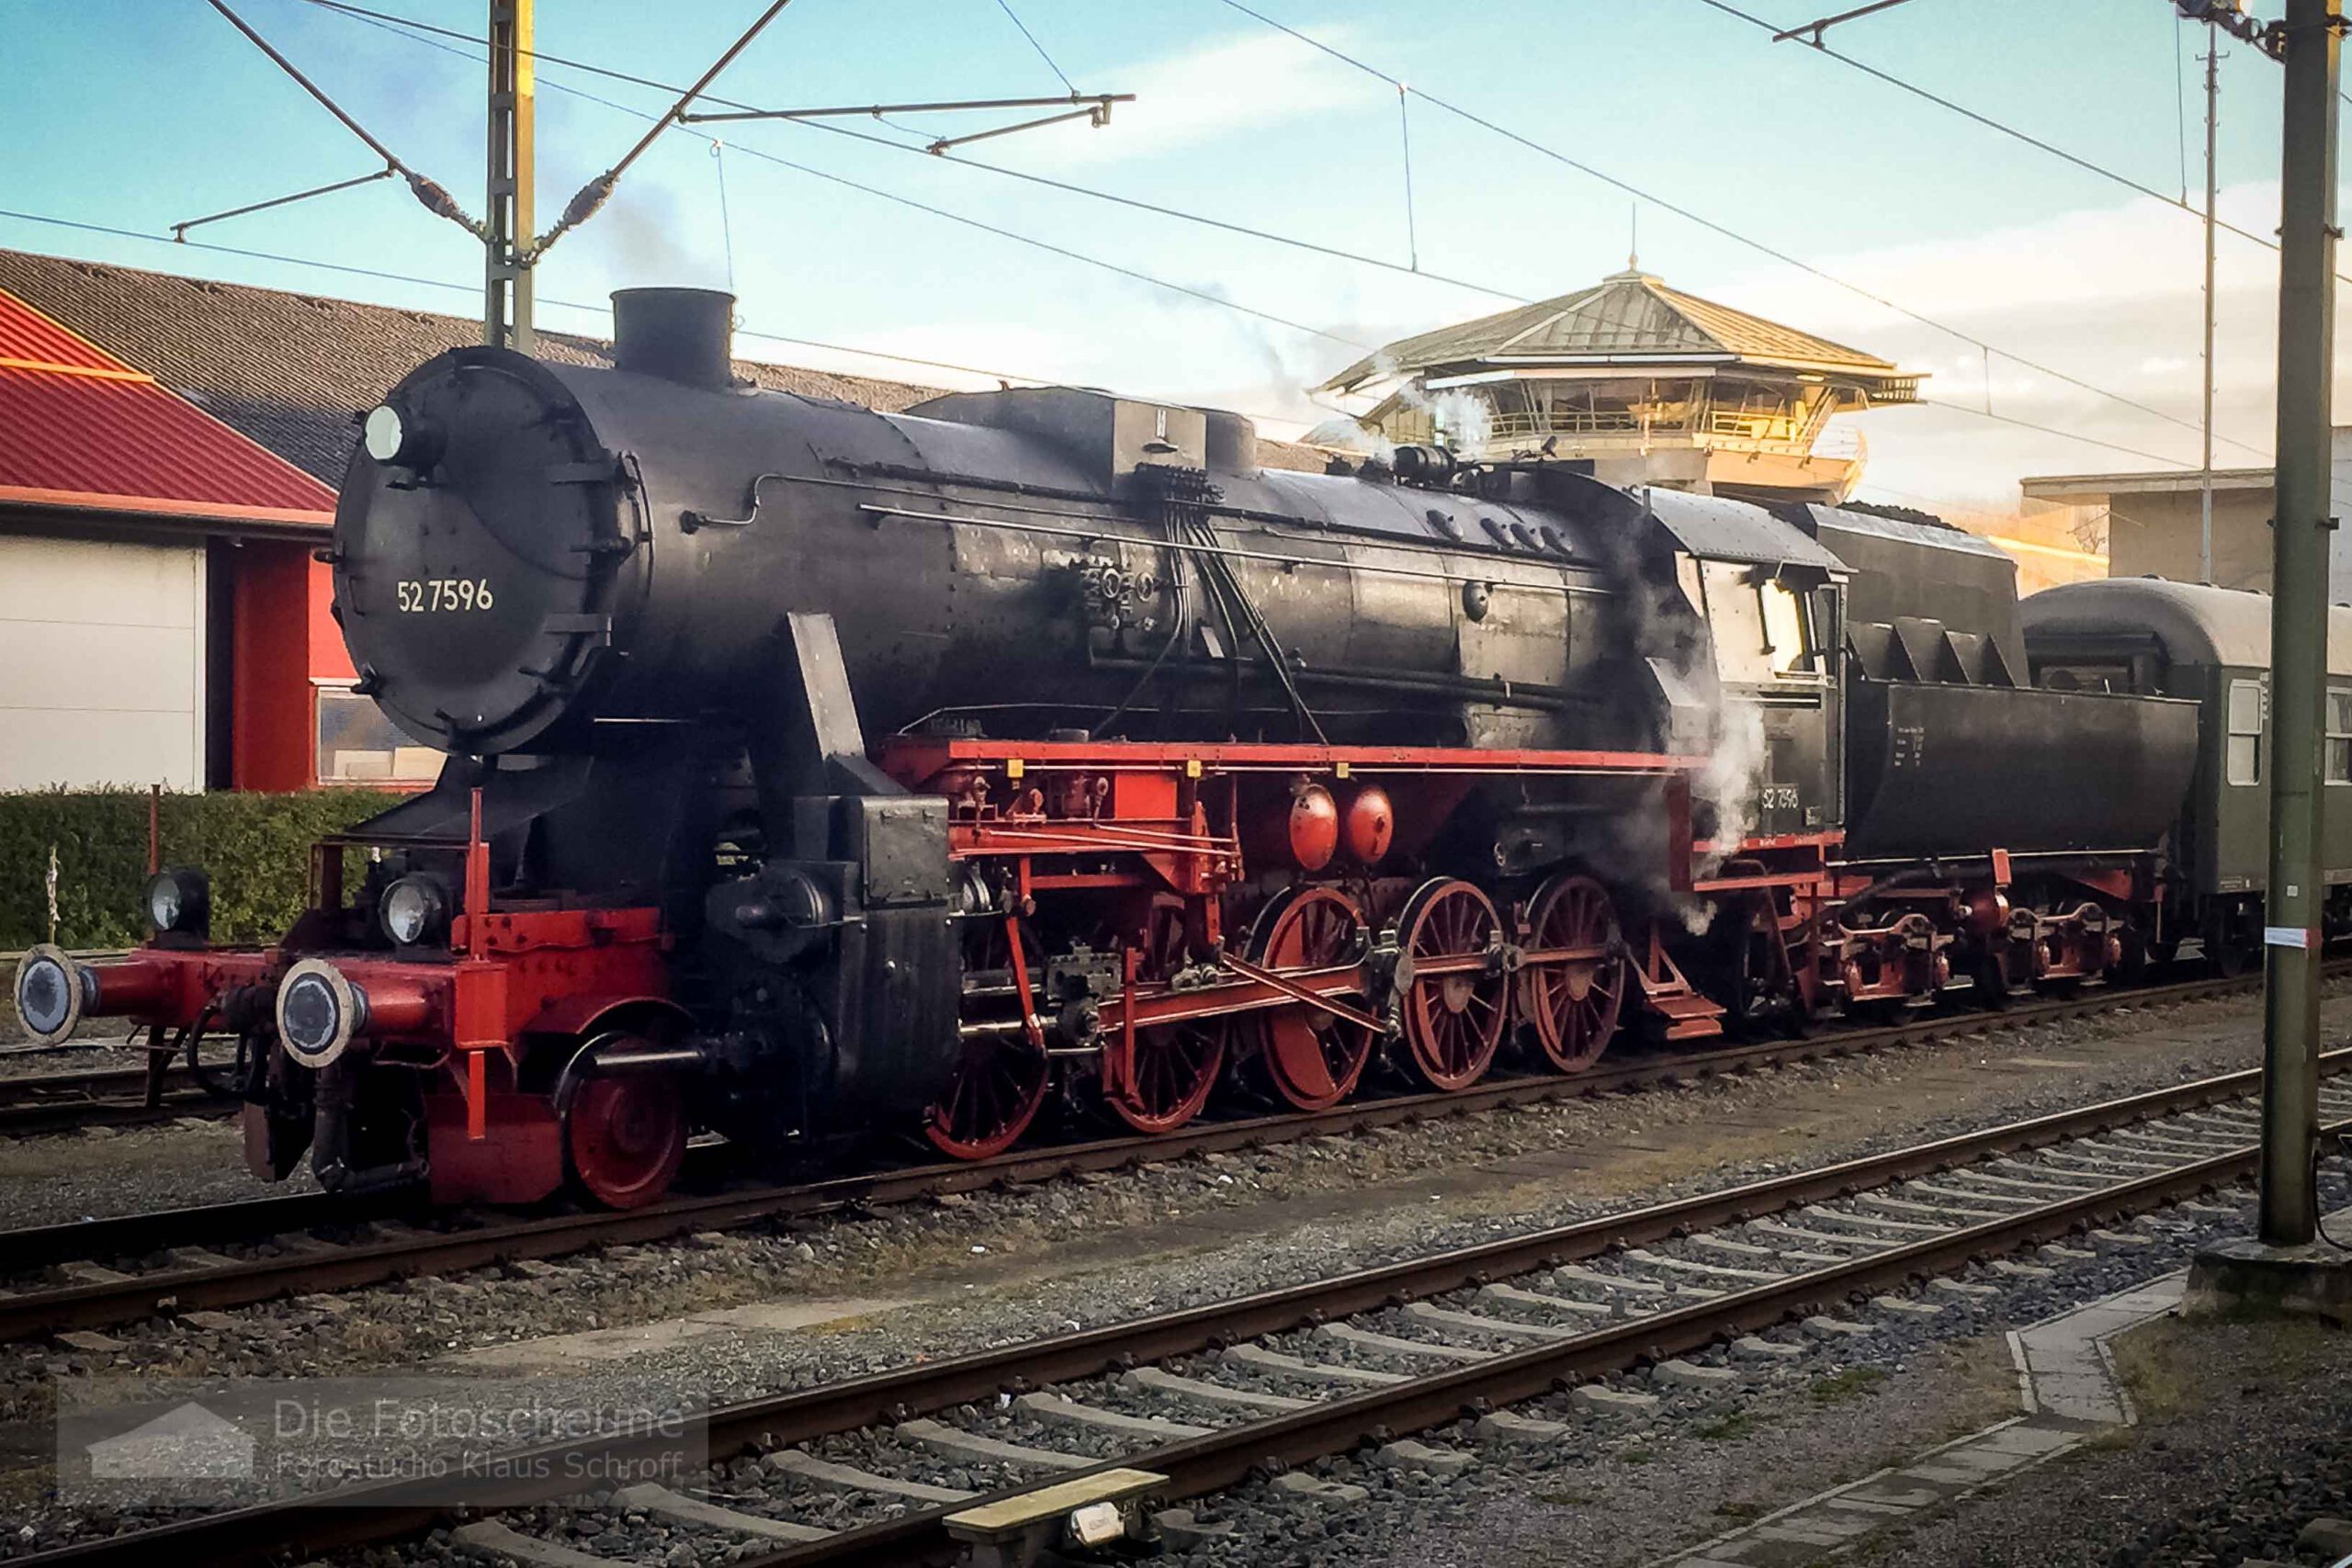 Lokomotiven 52 7596 und 146 227 in Konstanz